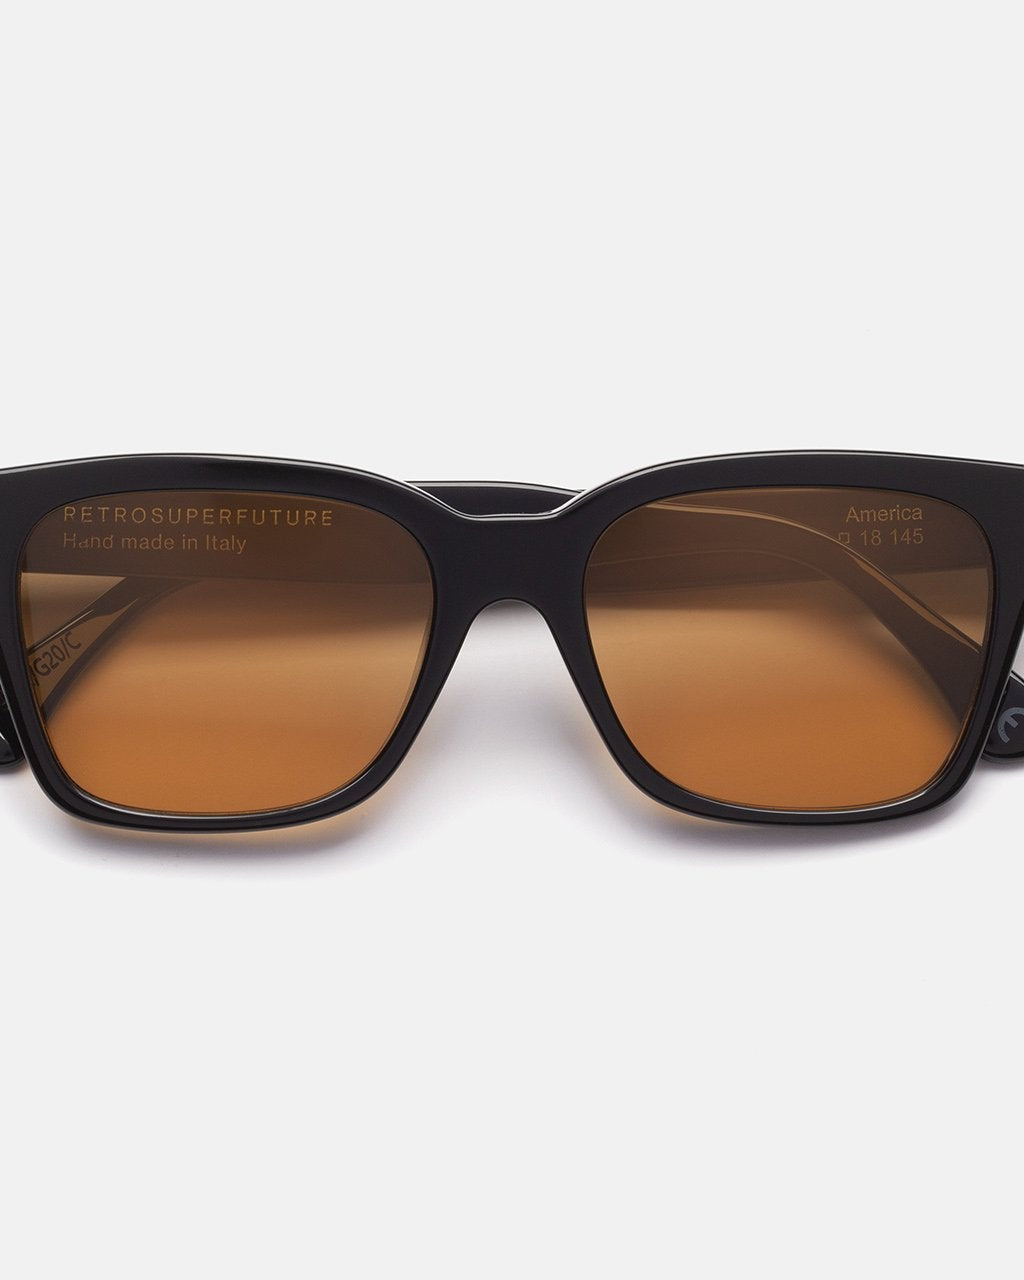 RETROSUPERFUTURE AMERICA REFINED - 52 sunglasses